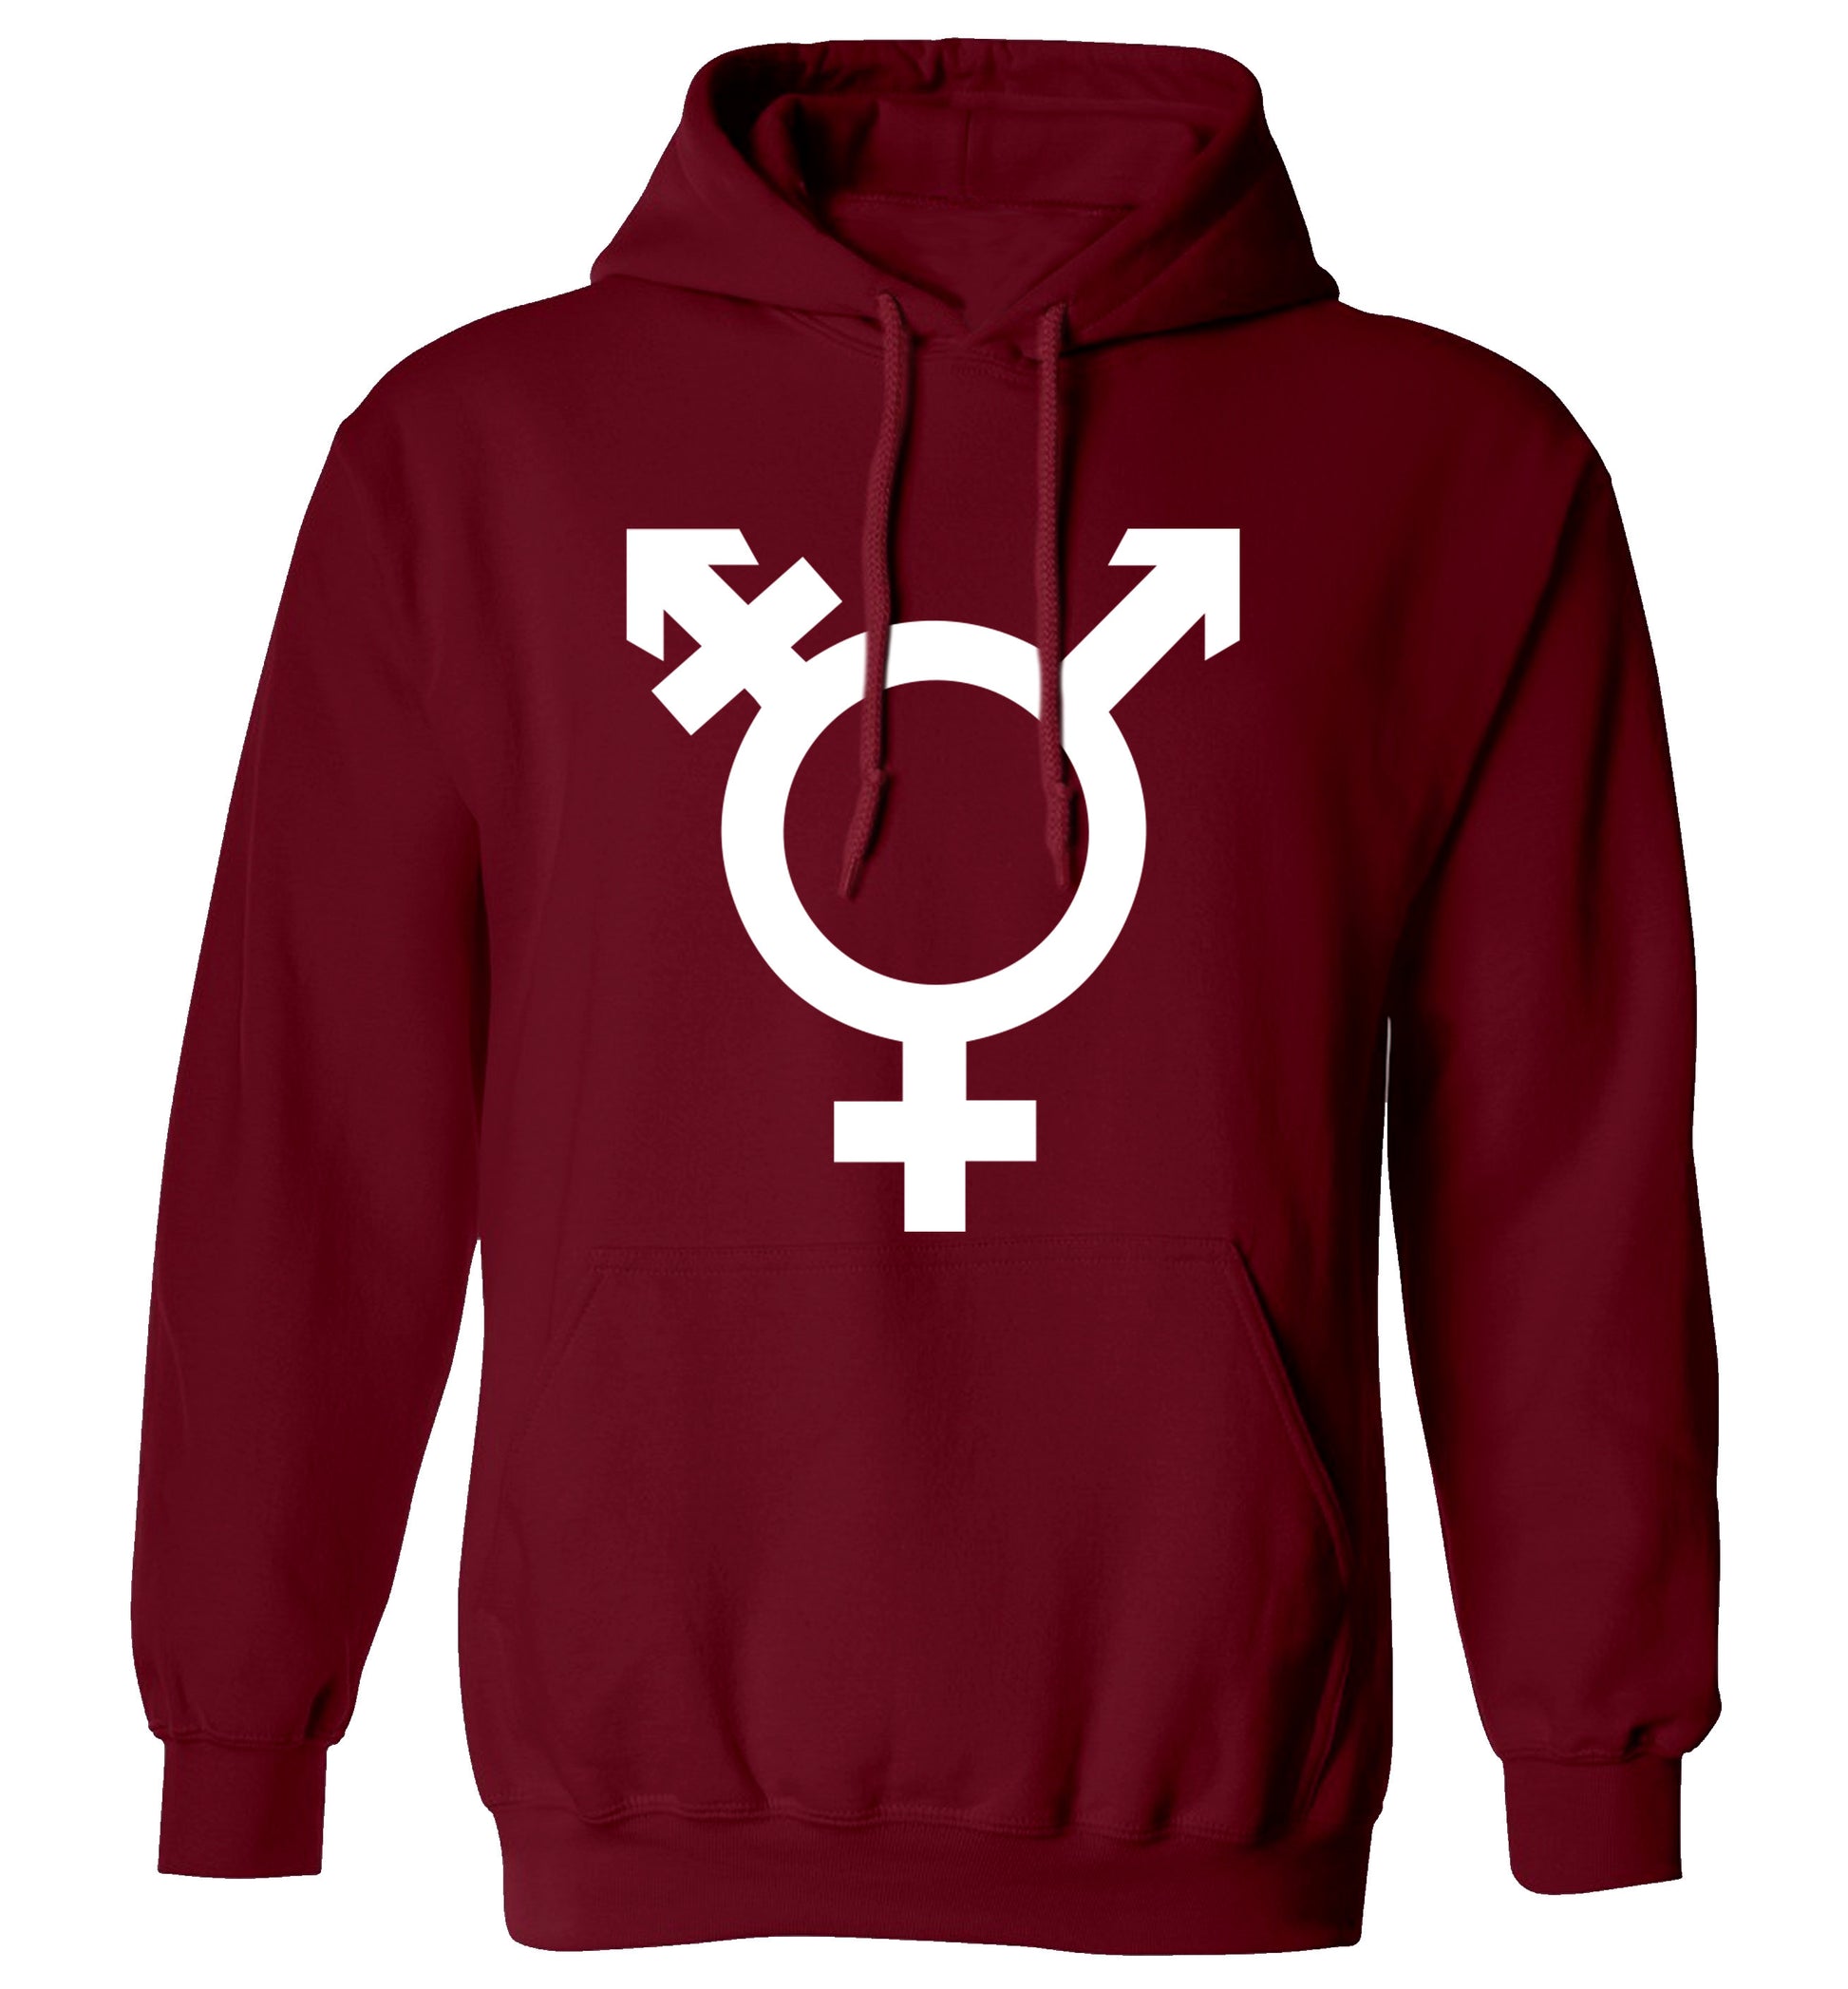 Gender neutral symbol large adults unisex maroon hoodie 2XL